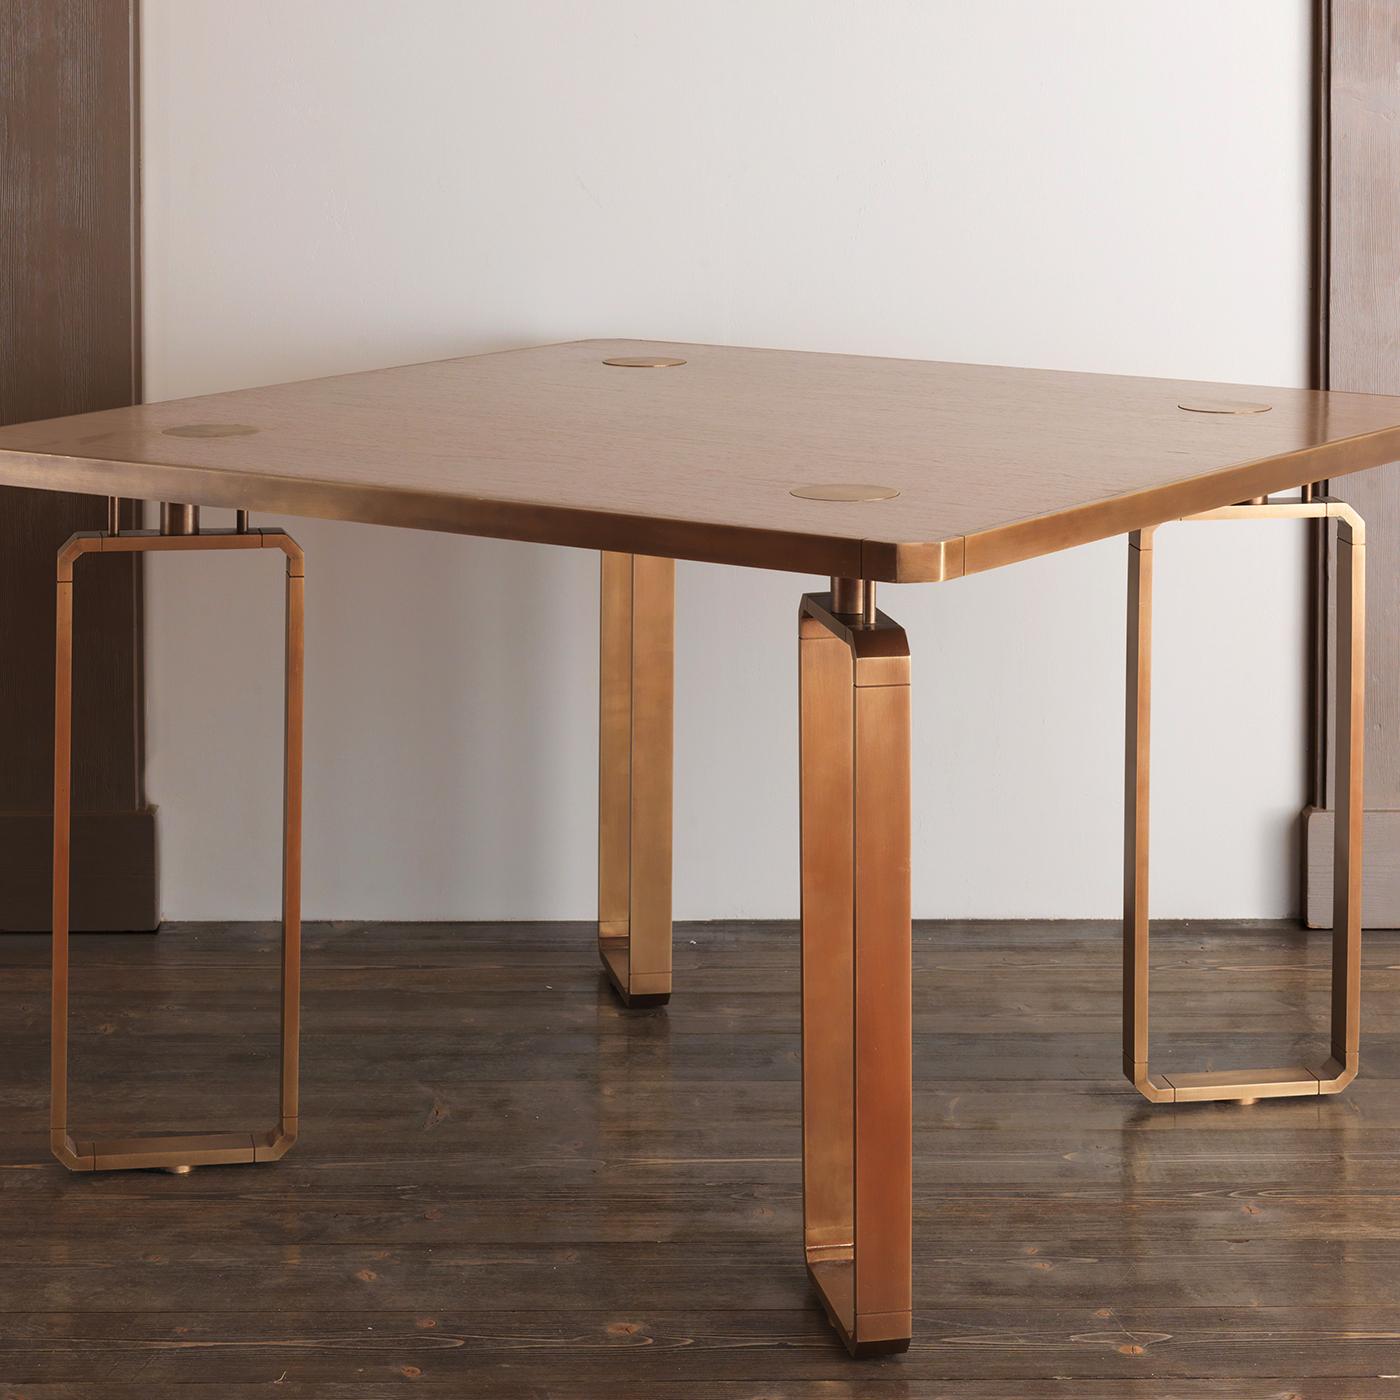 Dieser wunderbare Tisch gehört zur Domino-Kollektion von Ciarmoli Queda Studio, einer verspielten Serie von Möbeln, deren Silhouetten und dekorative Akzente an das Muster von Dominosteinen erinnern. Die quadratische Holzplatte mit charmanten